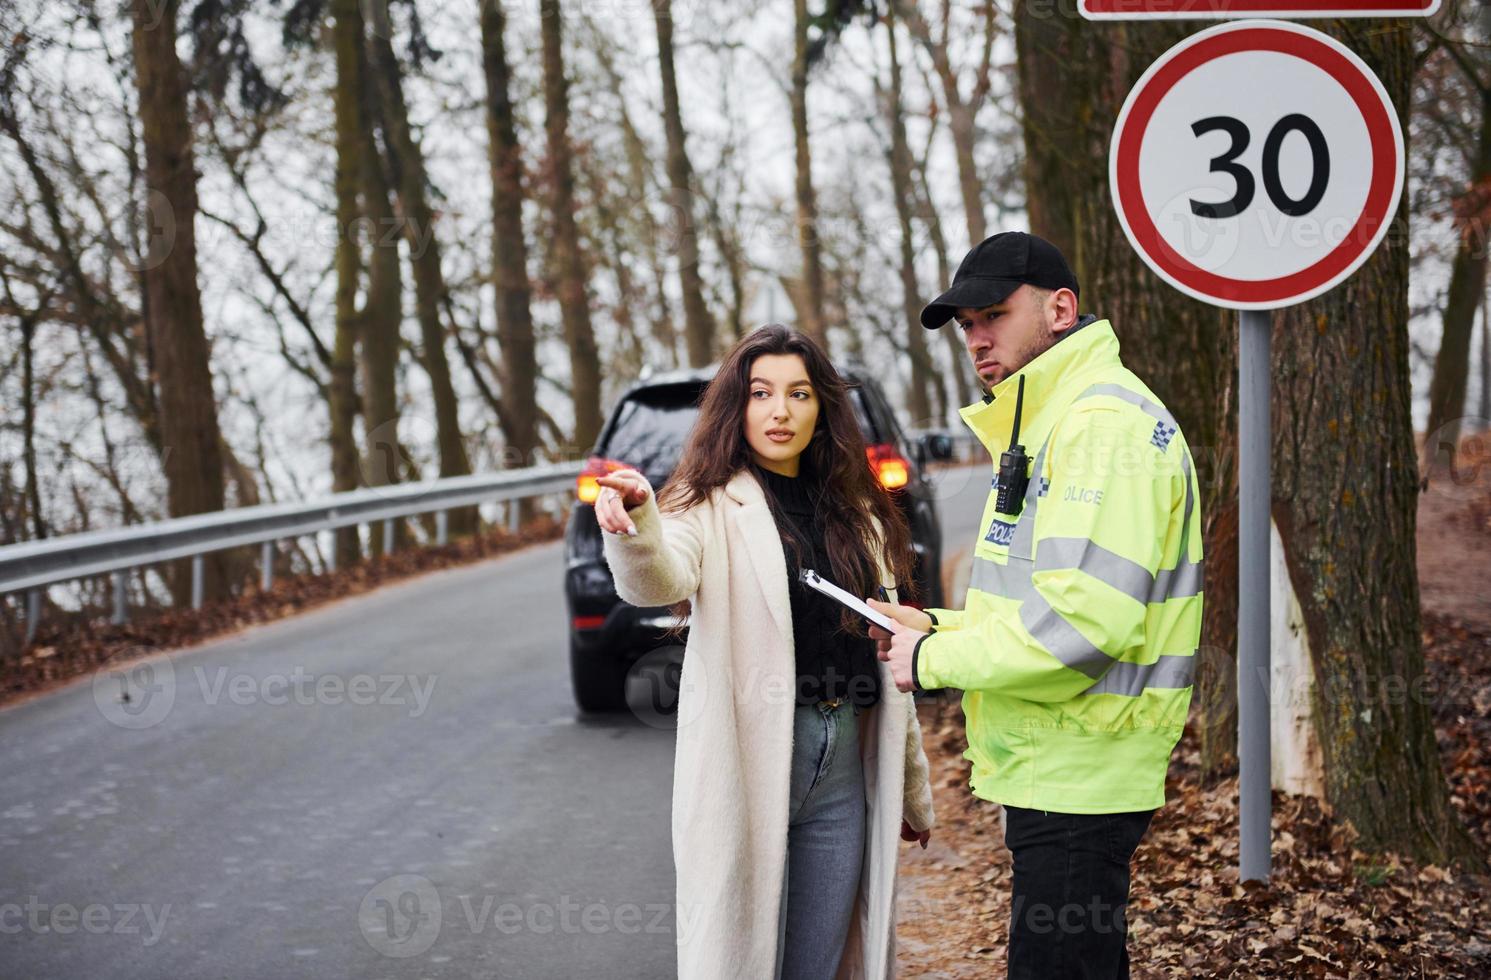 policial masculino de uniforme verde conversando com a dona do carro na estrada foto